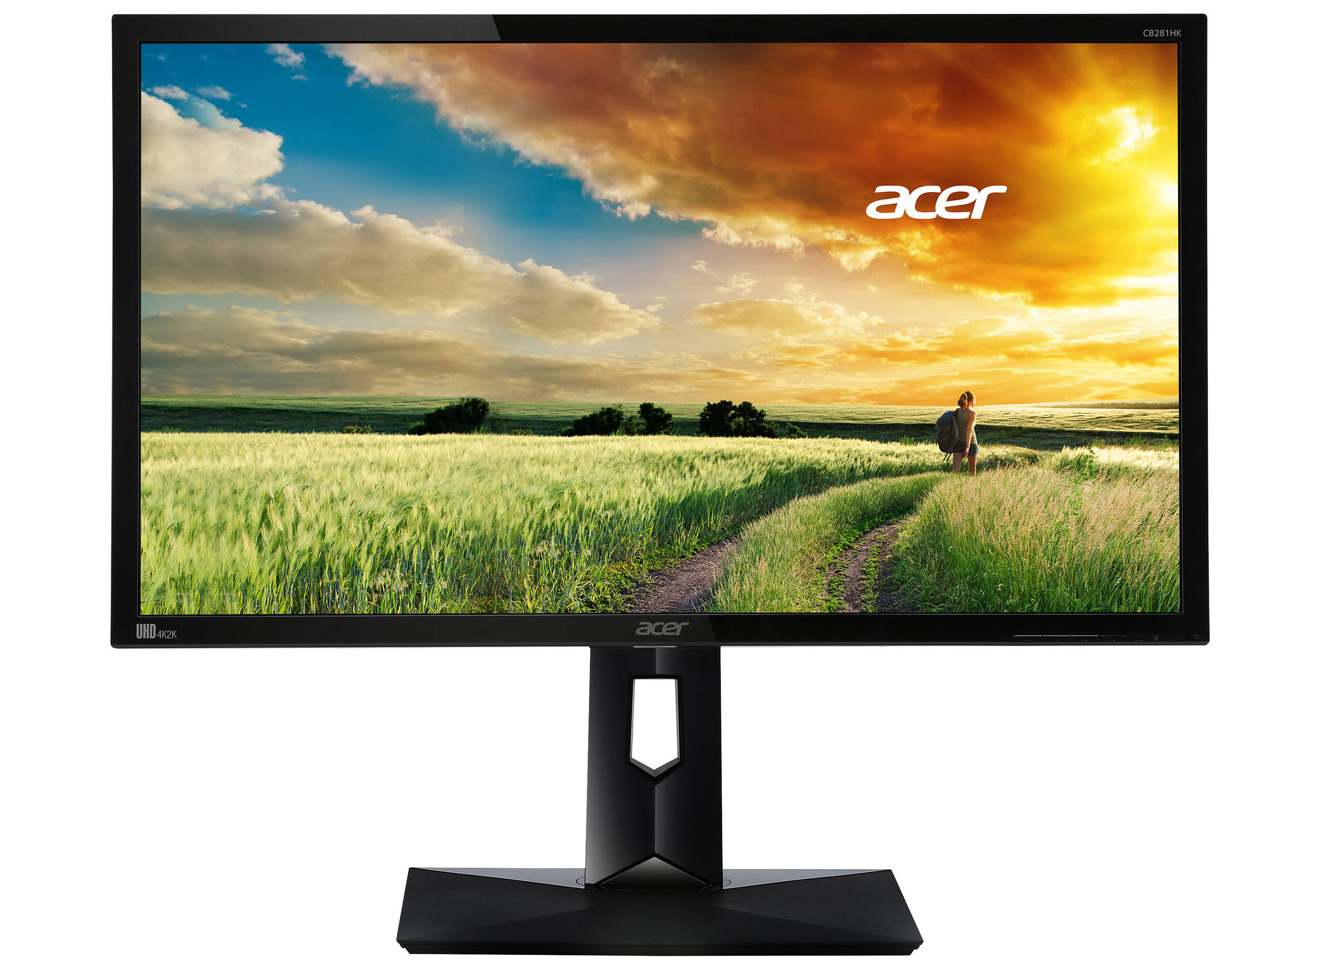 Acer affordable 4K monitor